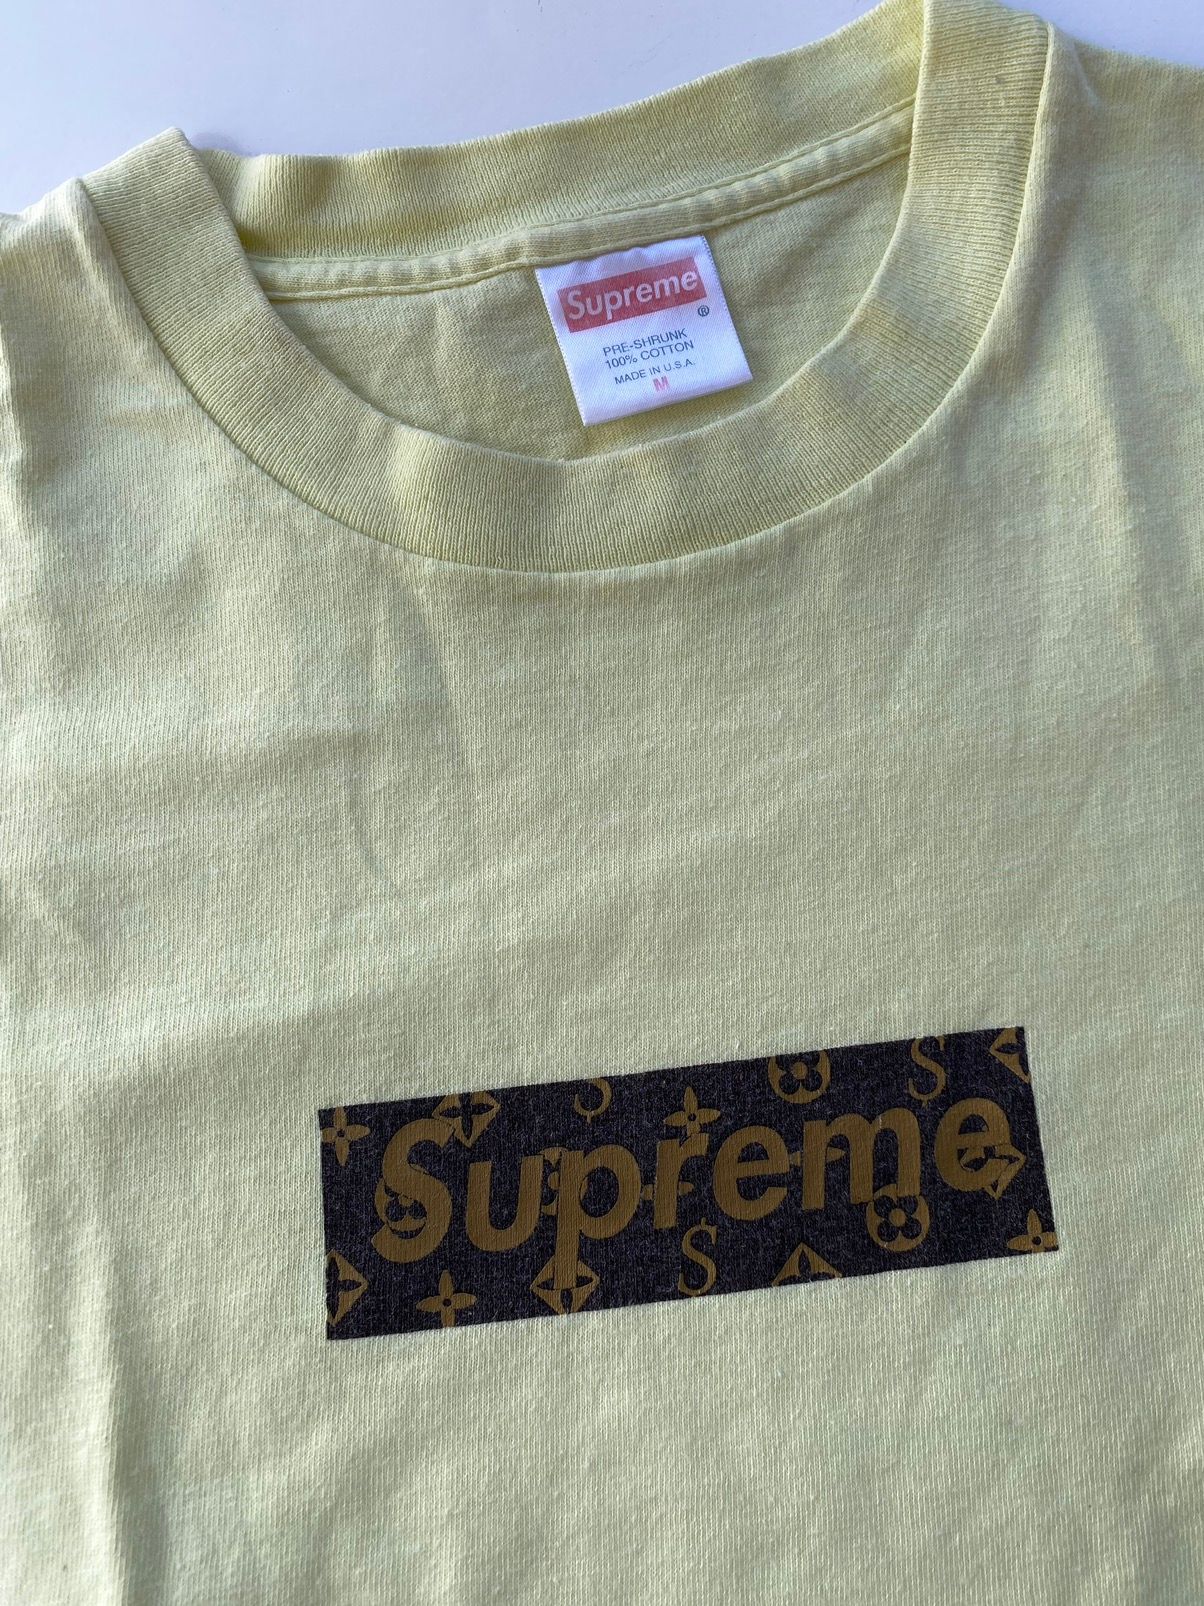 2000 Supreme LV : r/Supreme